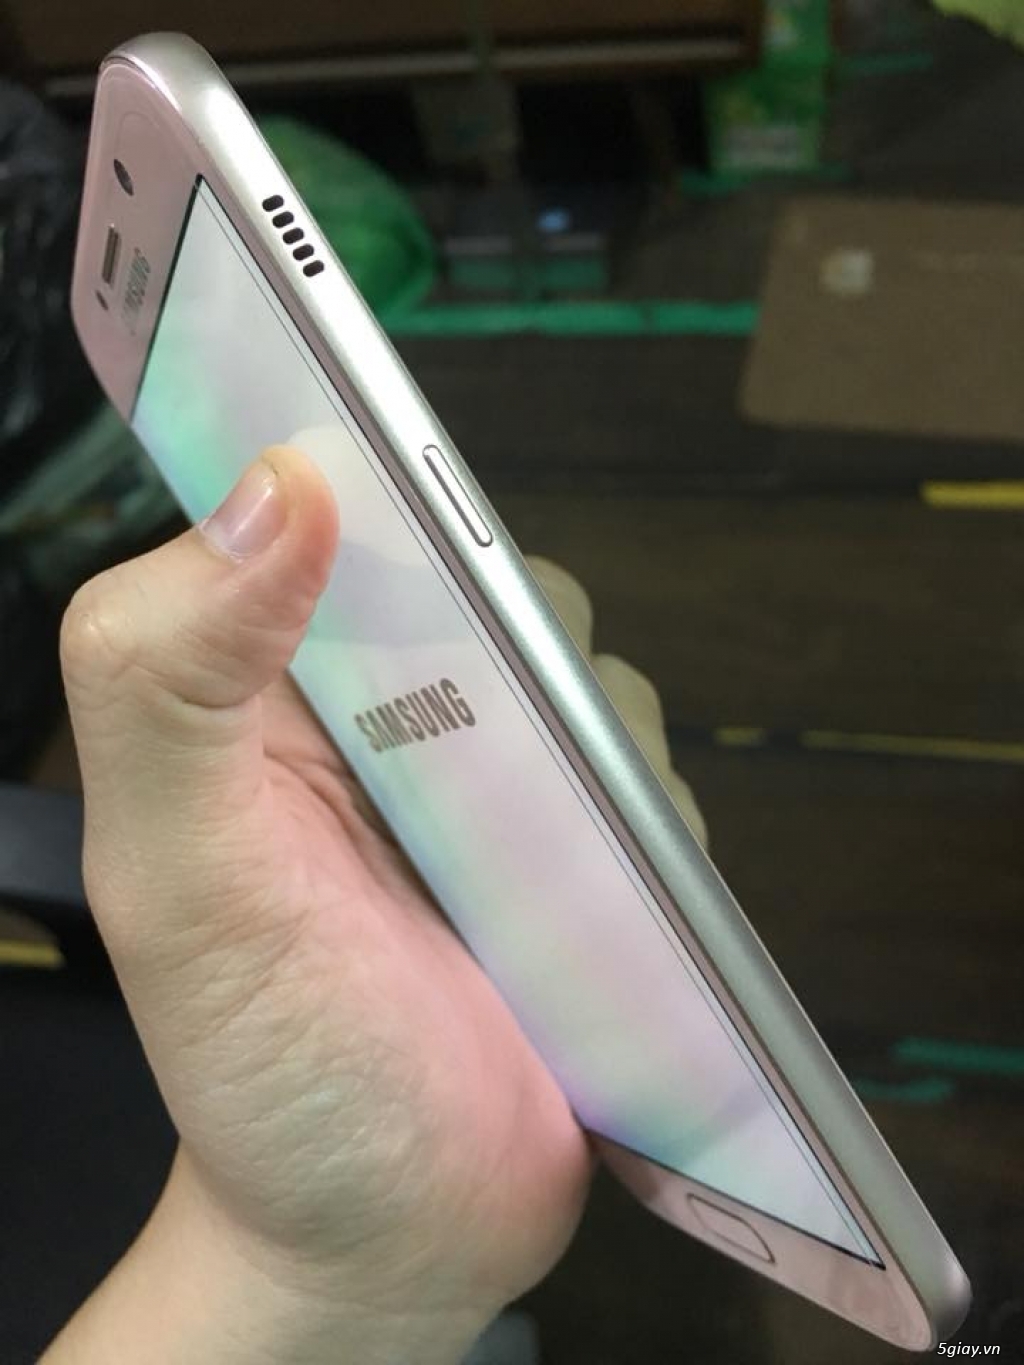 Samsung a5 2017 rose máy đẹp còn bảo hành - 2